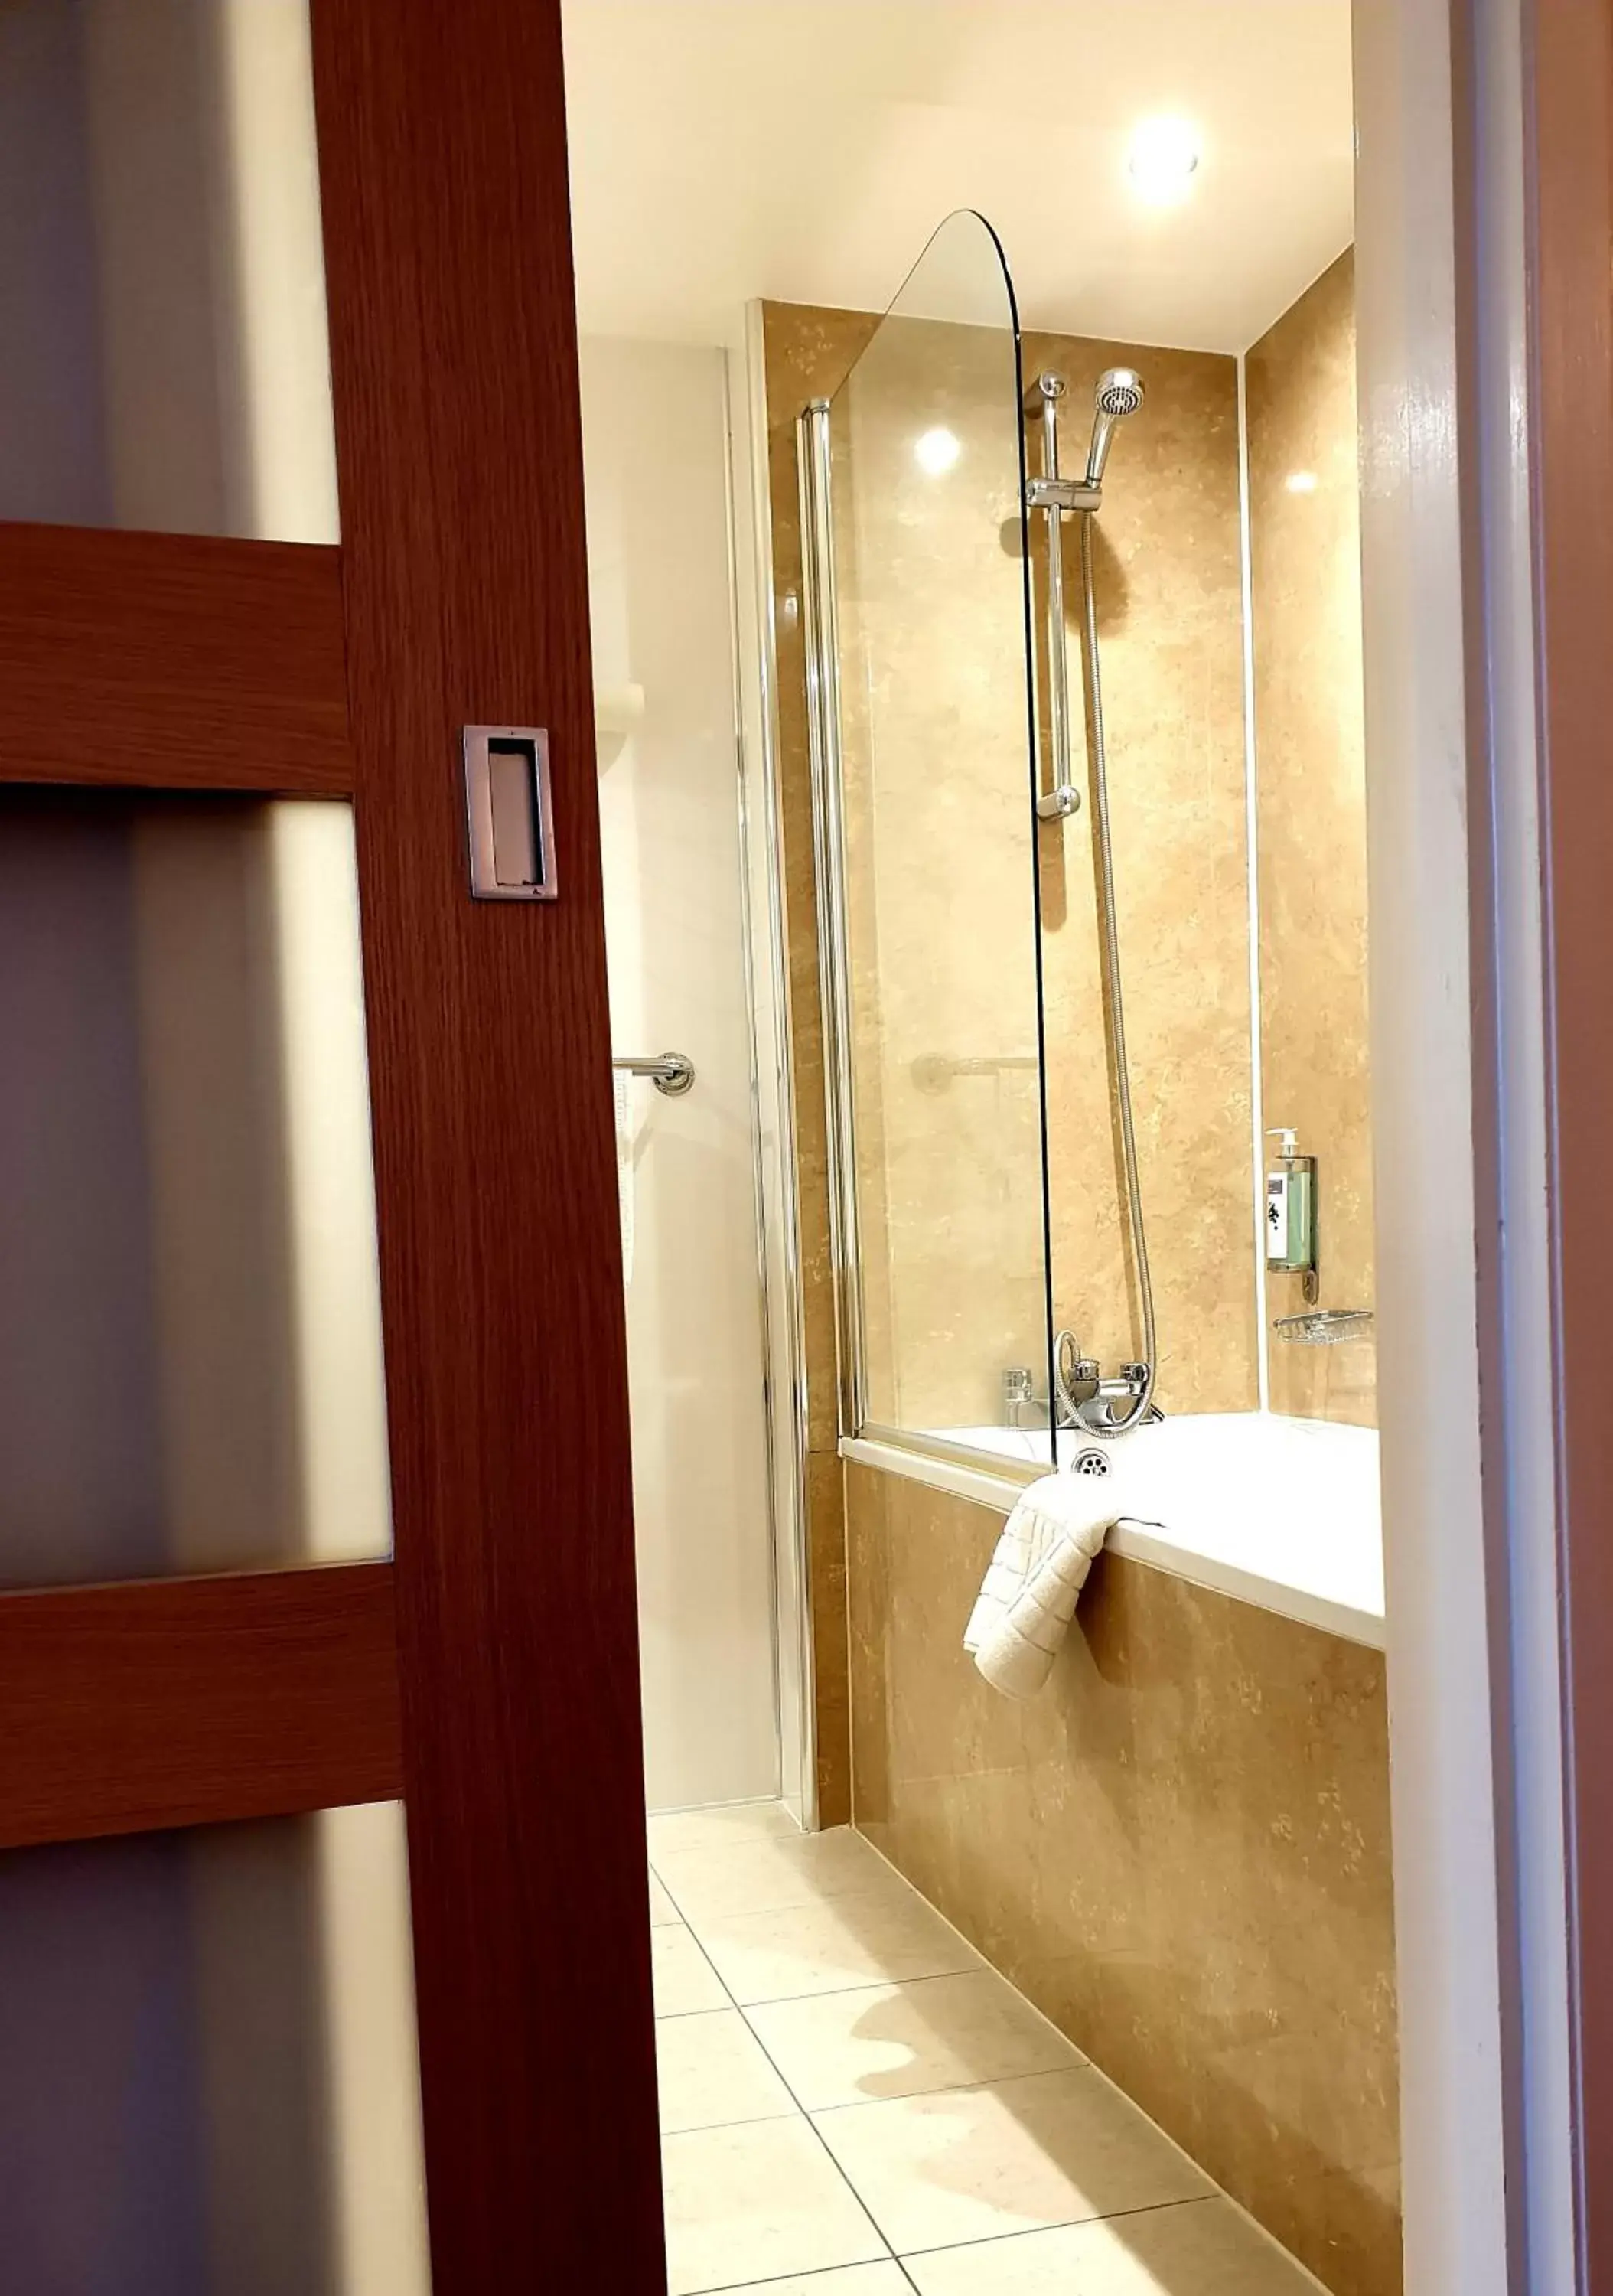 Shower, Bathroom in Best Western Homestead Court Hotel